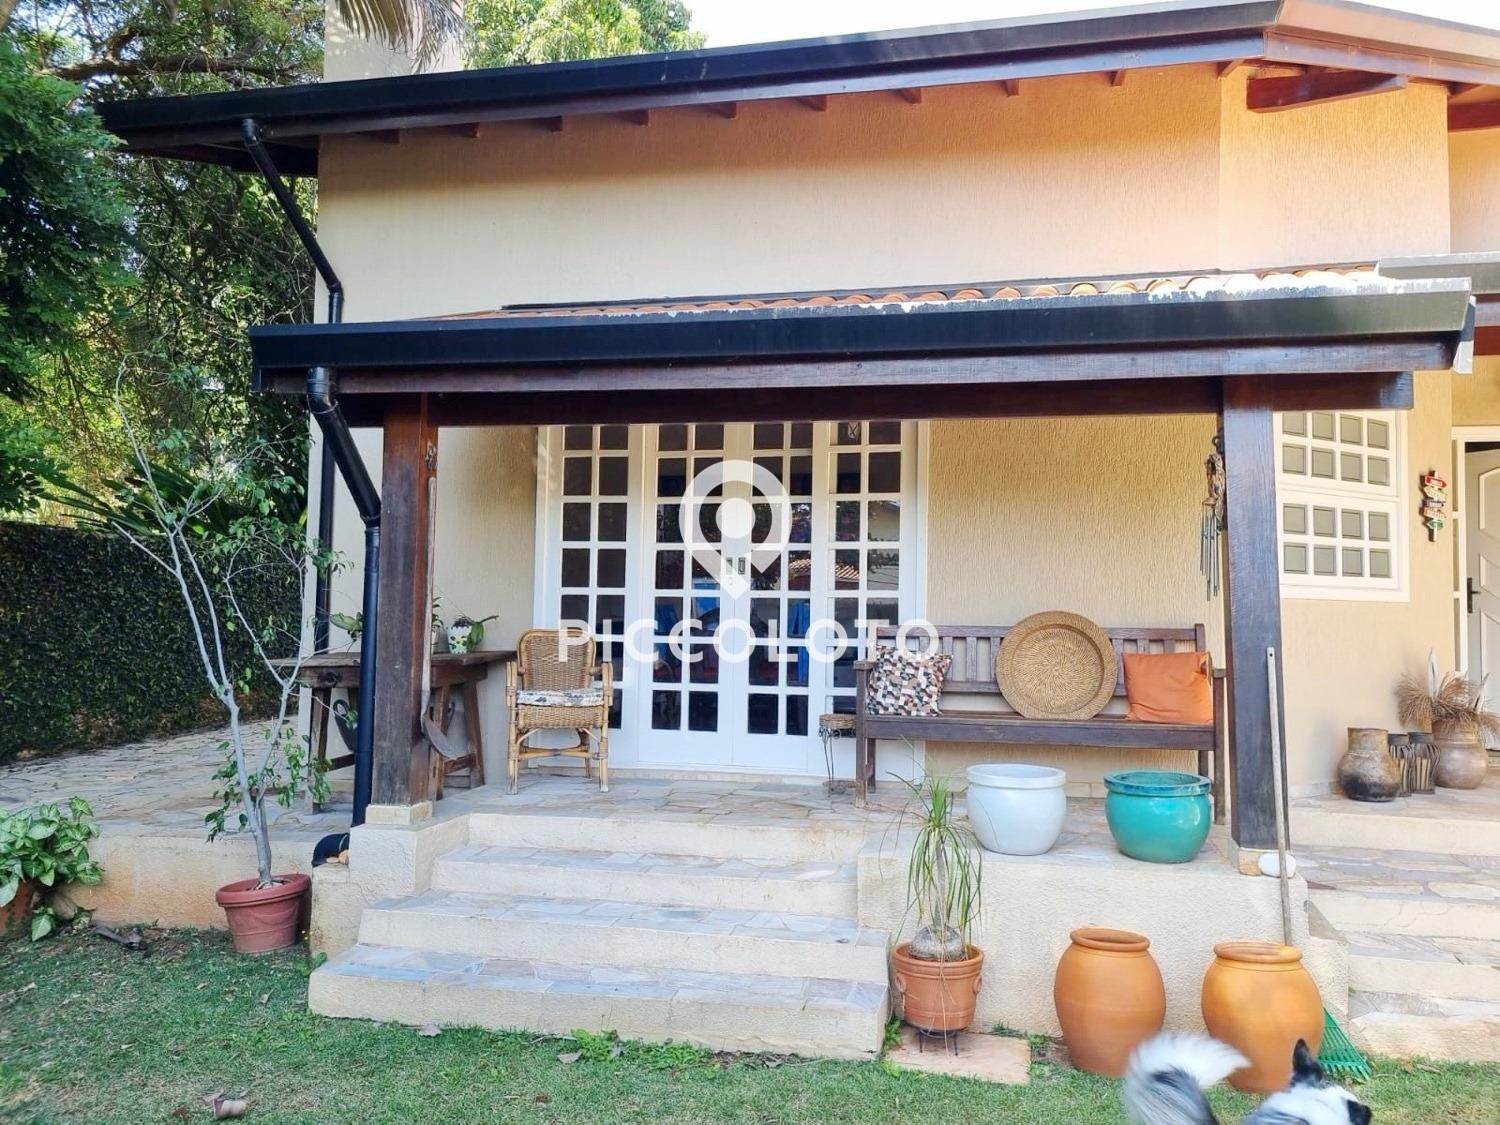 Piccoloto -Casa à venda no Loteamento Caminhos de São Conrado (Sousas) em Campinas